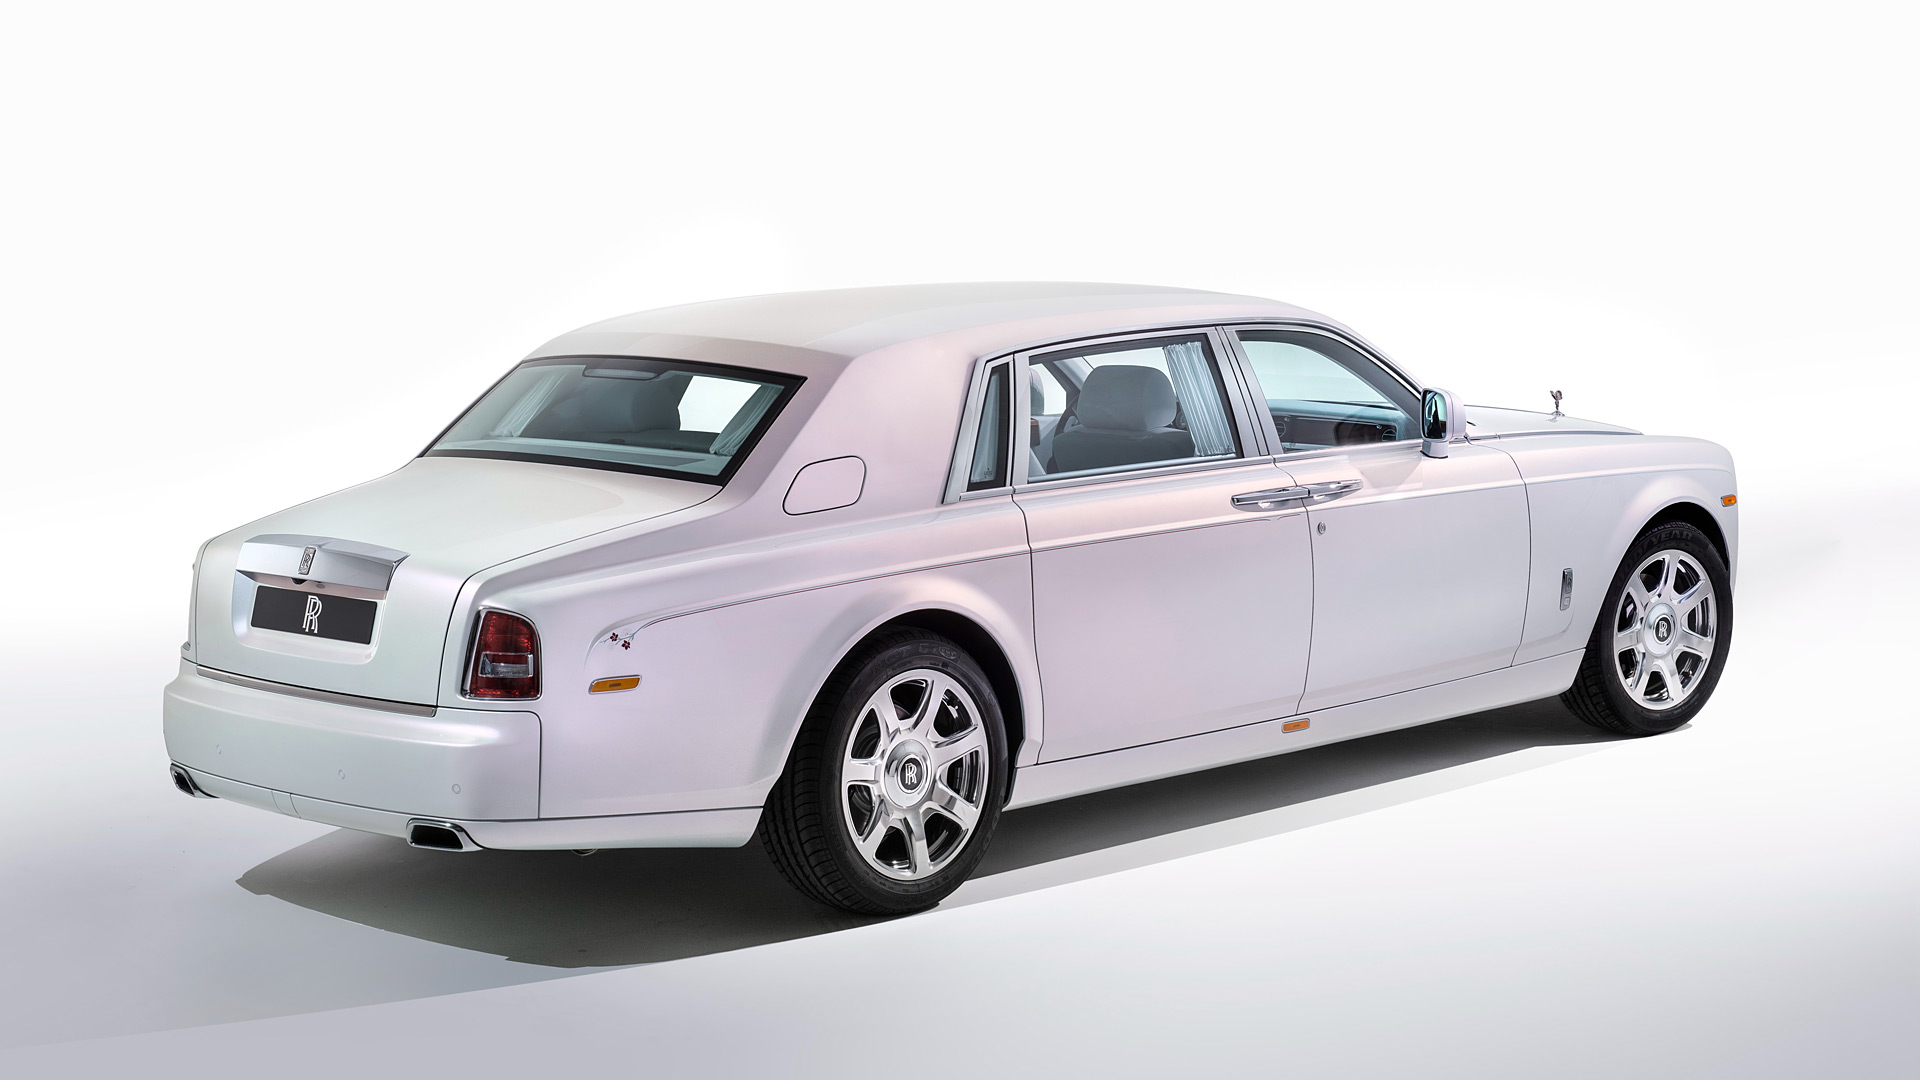  2015 Rolls-Royce Phantom Serenity Wallpaper.